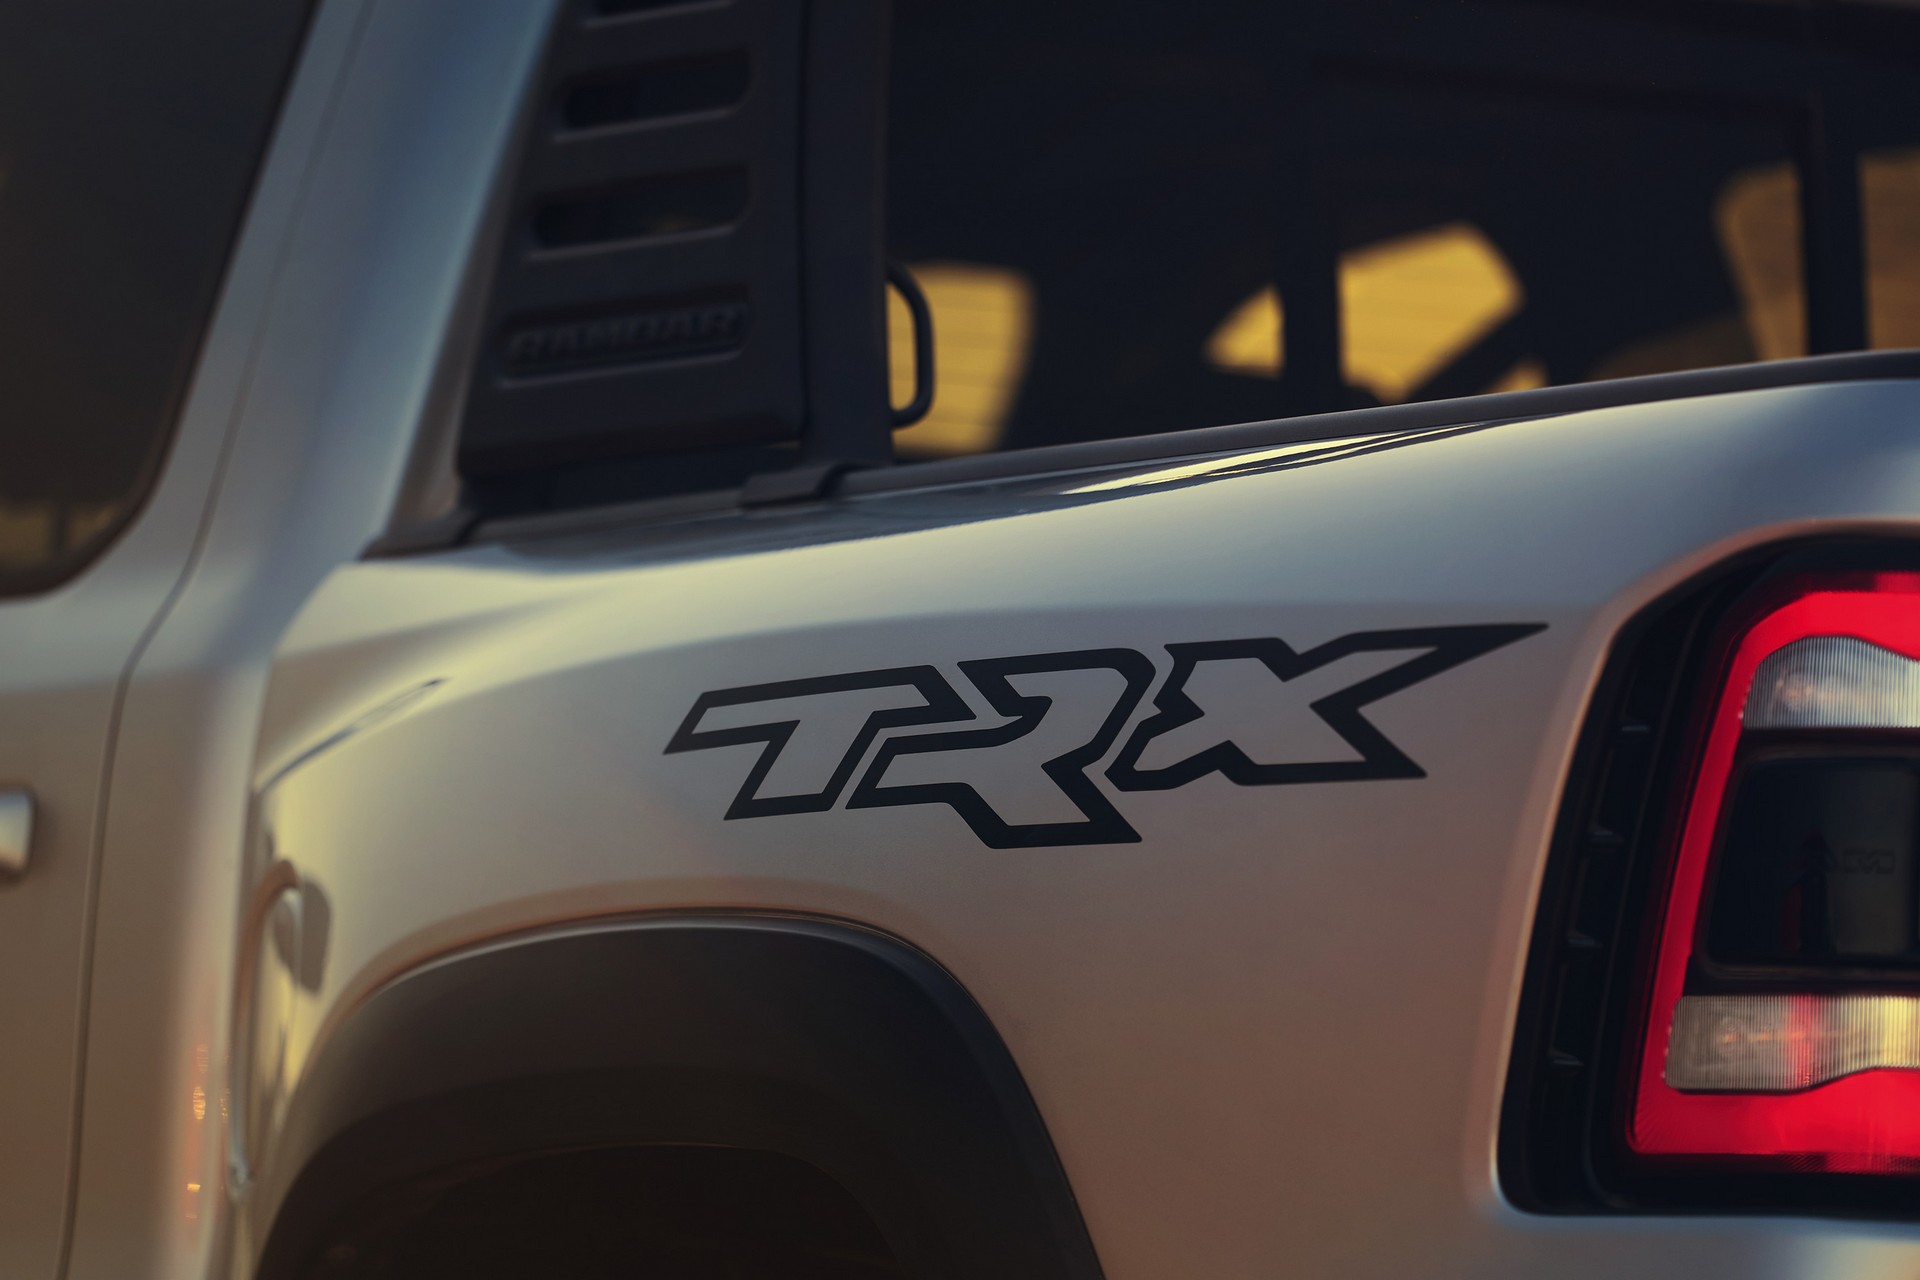 เร็วสุด ทรงพลังสุด! Ram 1500 TRX 2021 กระบะเครื่อง V8 ราคาสองล้านเศษ